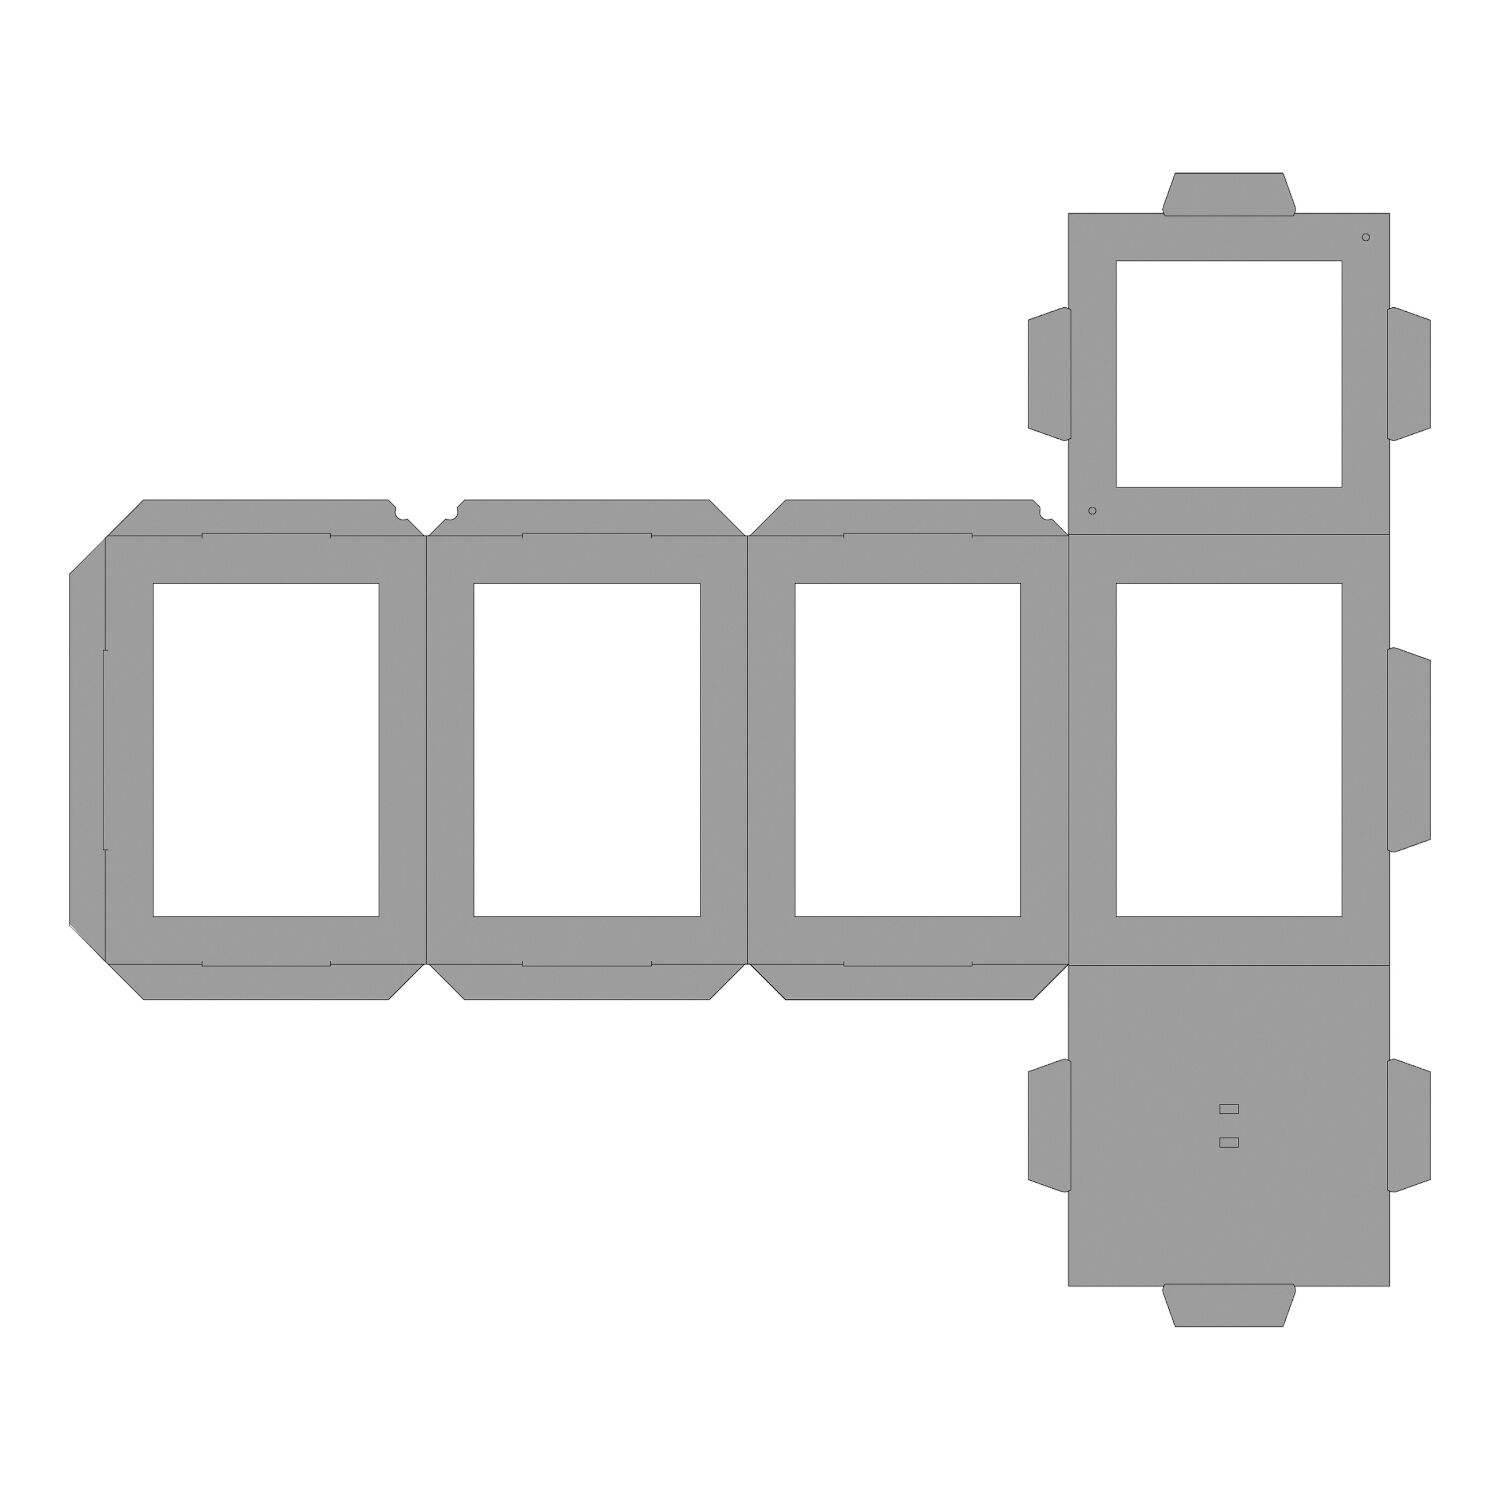 NEU Laternen Rohling zum Stecken, 400g/m², Eckig: 13,5x13,5x18cm, 1 Stück, Weiß Bild 3